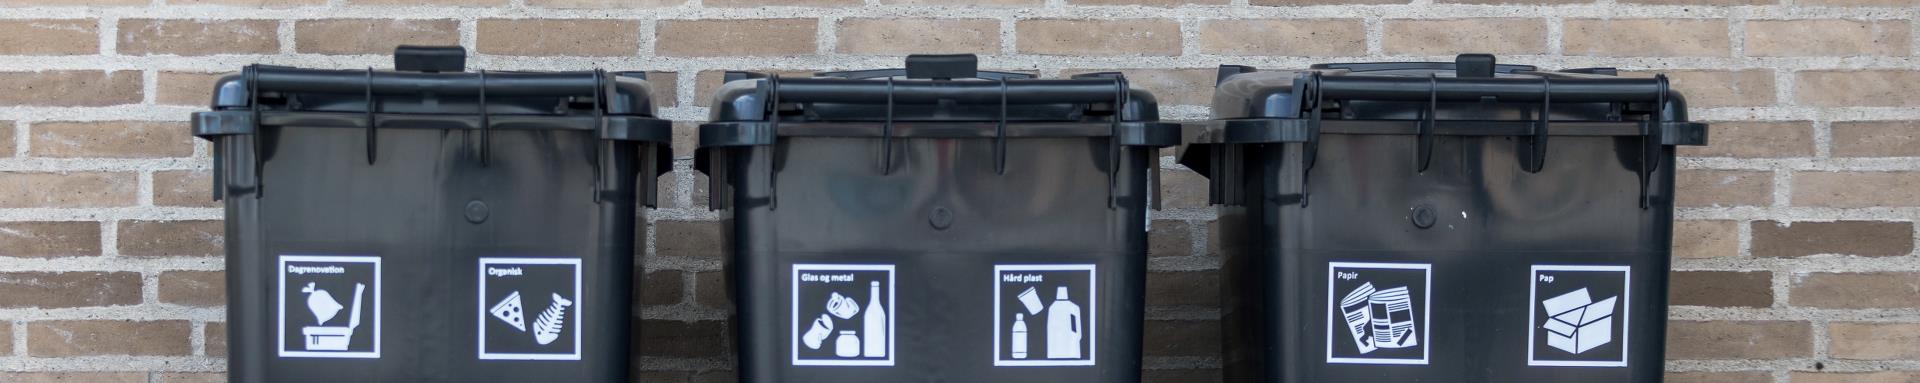 Tre sorte affaldscontainere står op ad en lysebrun murstensvæg. På hver containere er der to hvide piktogrammer, som hver især illustrerer hvilken type affald, der må komme i containeren.  